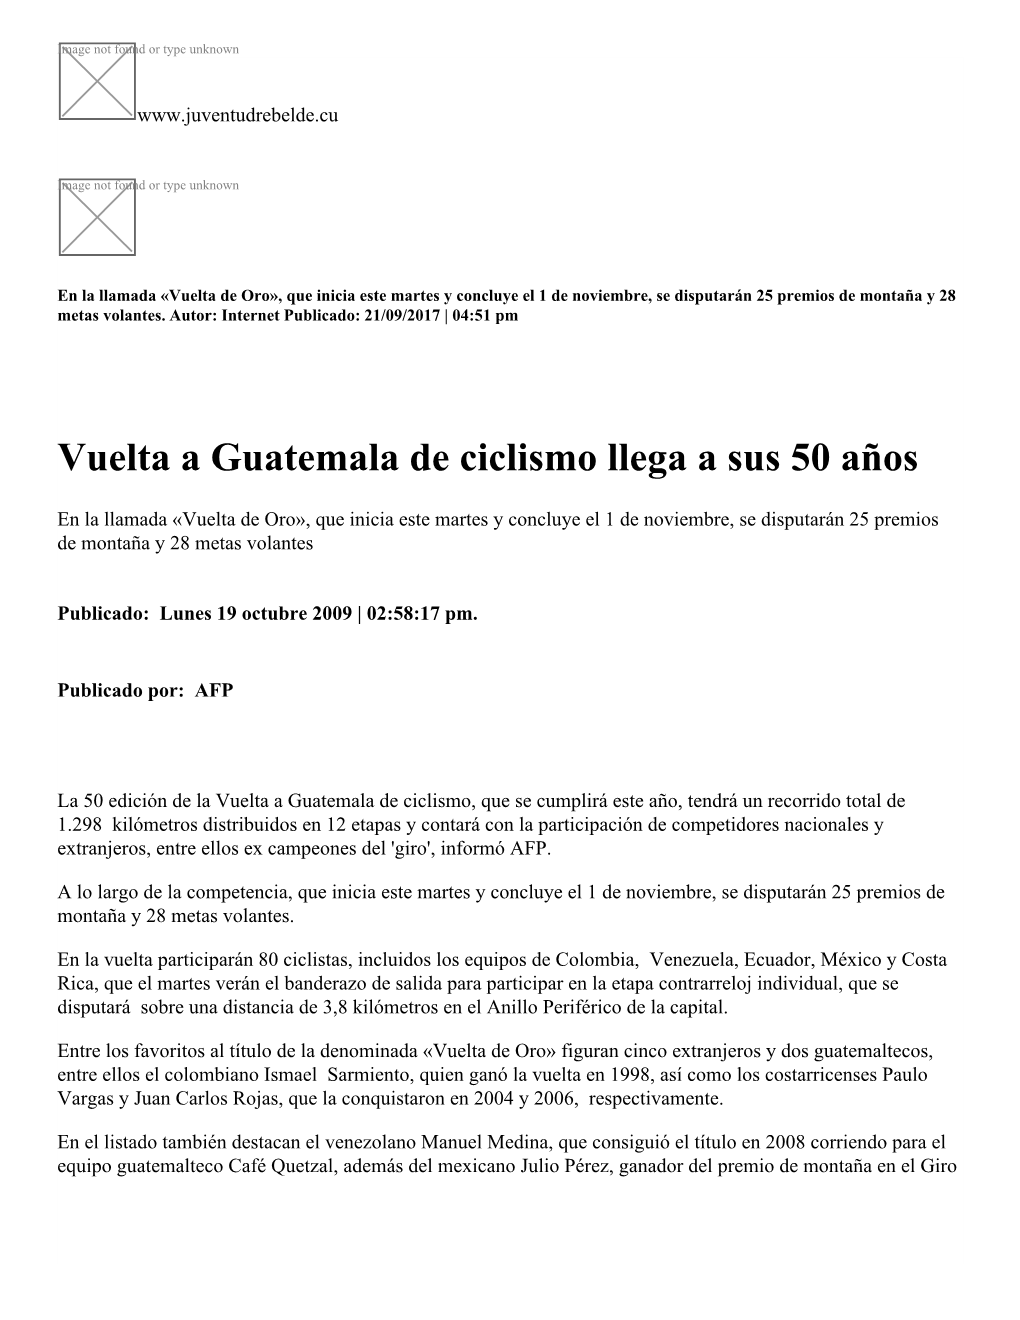 Vuelta a Guatemala De Ciclismo Llega a Sus 50 Años